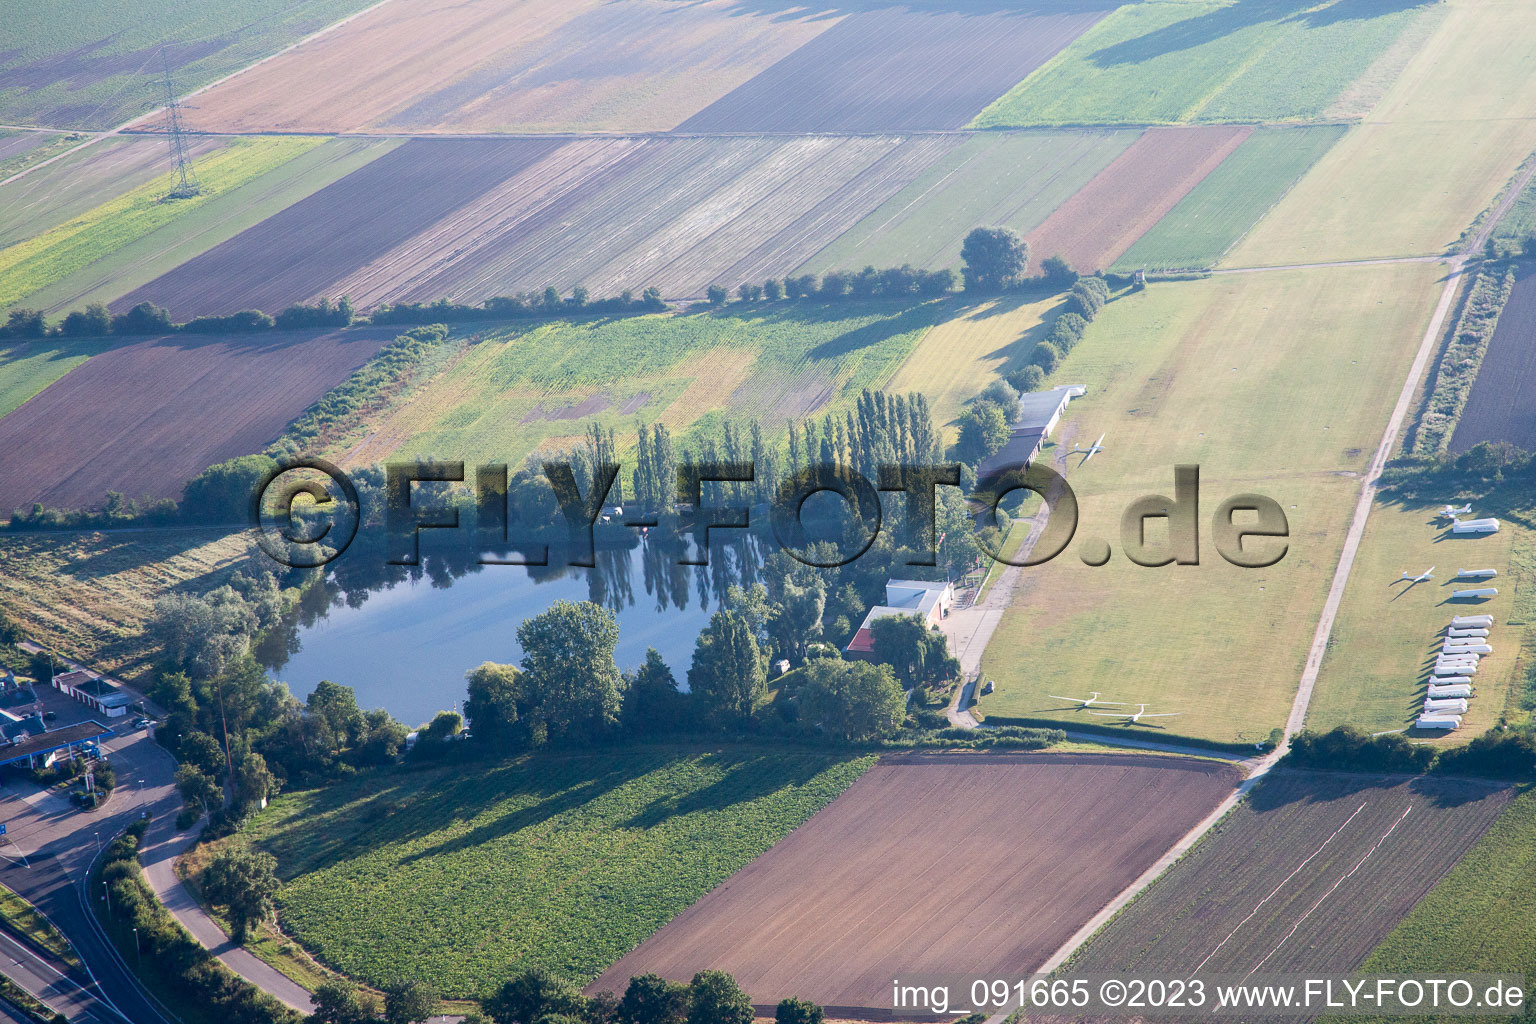 Glider airfield in the district Dannstadt in Dannstadt-Schauernheim in the state Rhineland-Palatinate, Germany